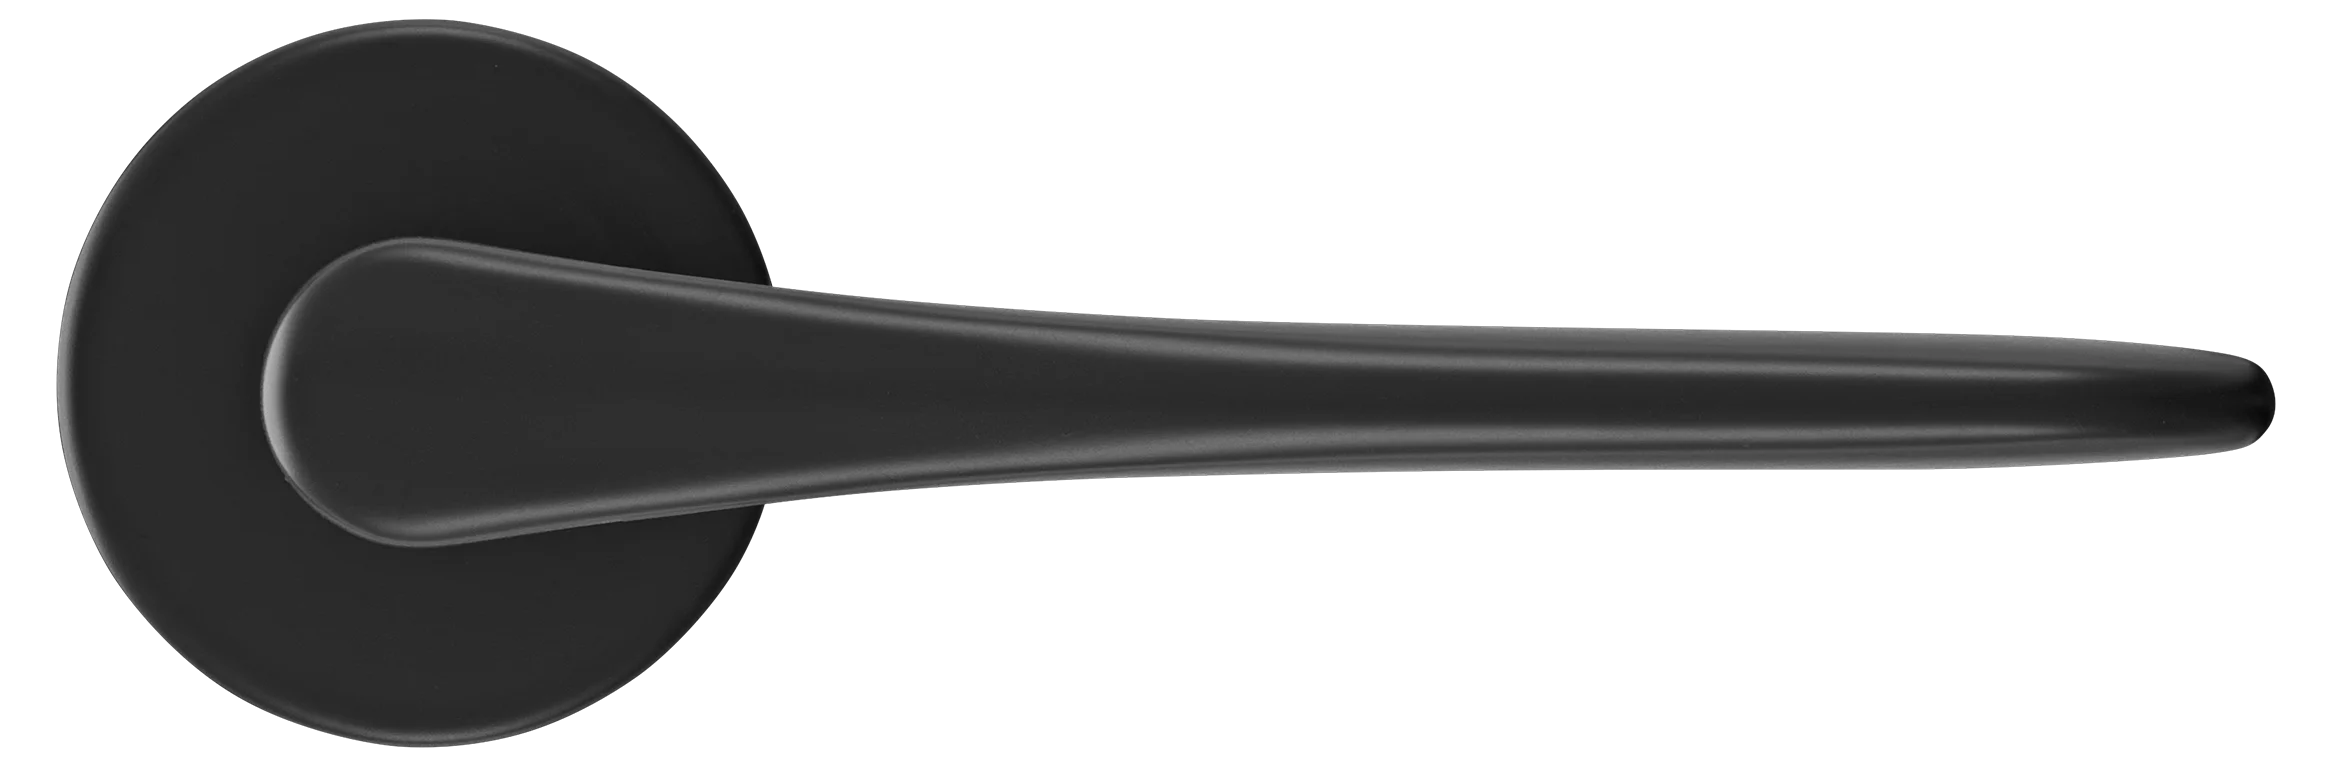 AULA R5 NERO, ручка дверная на розетке 7мм, цвет -  черный фото купить в Набережных Челнах